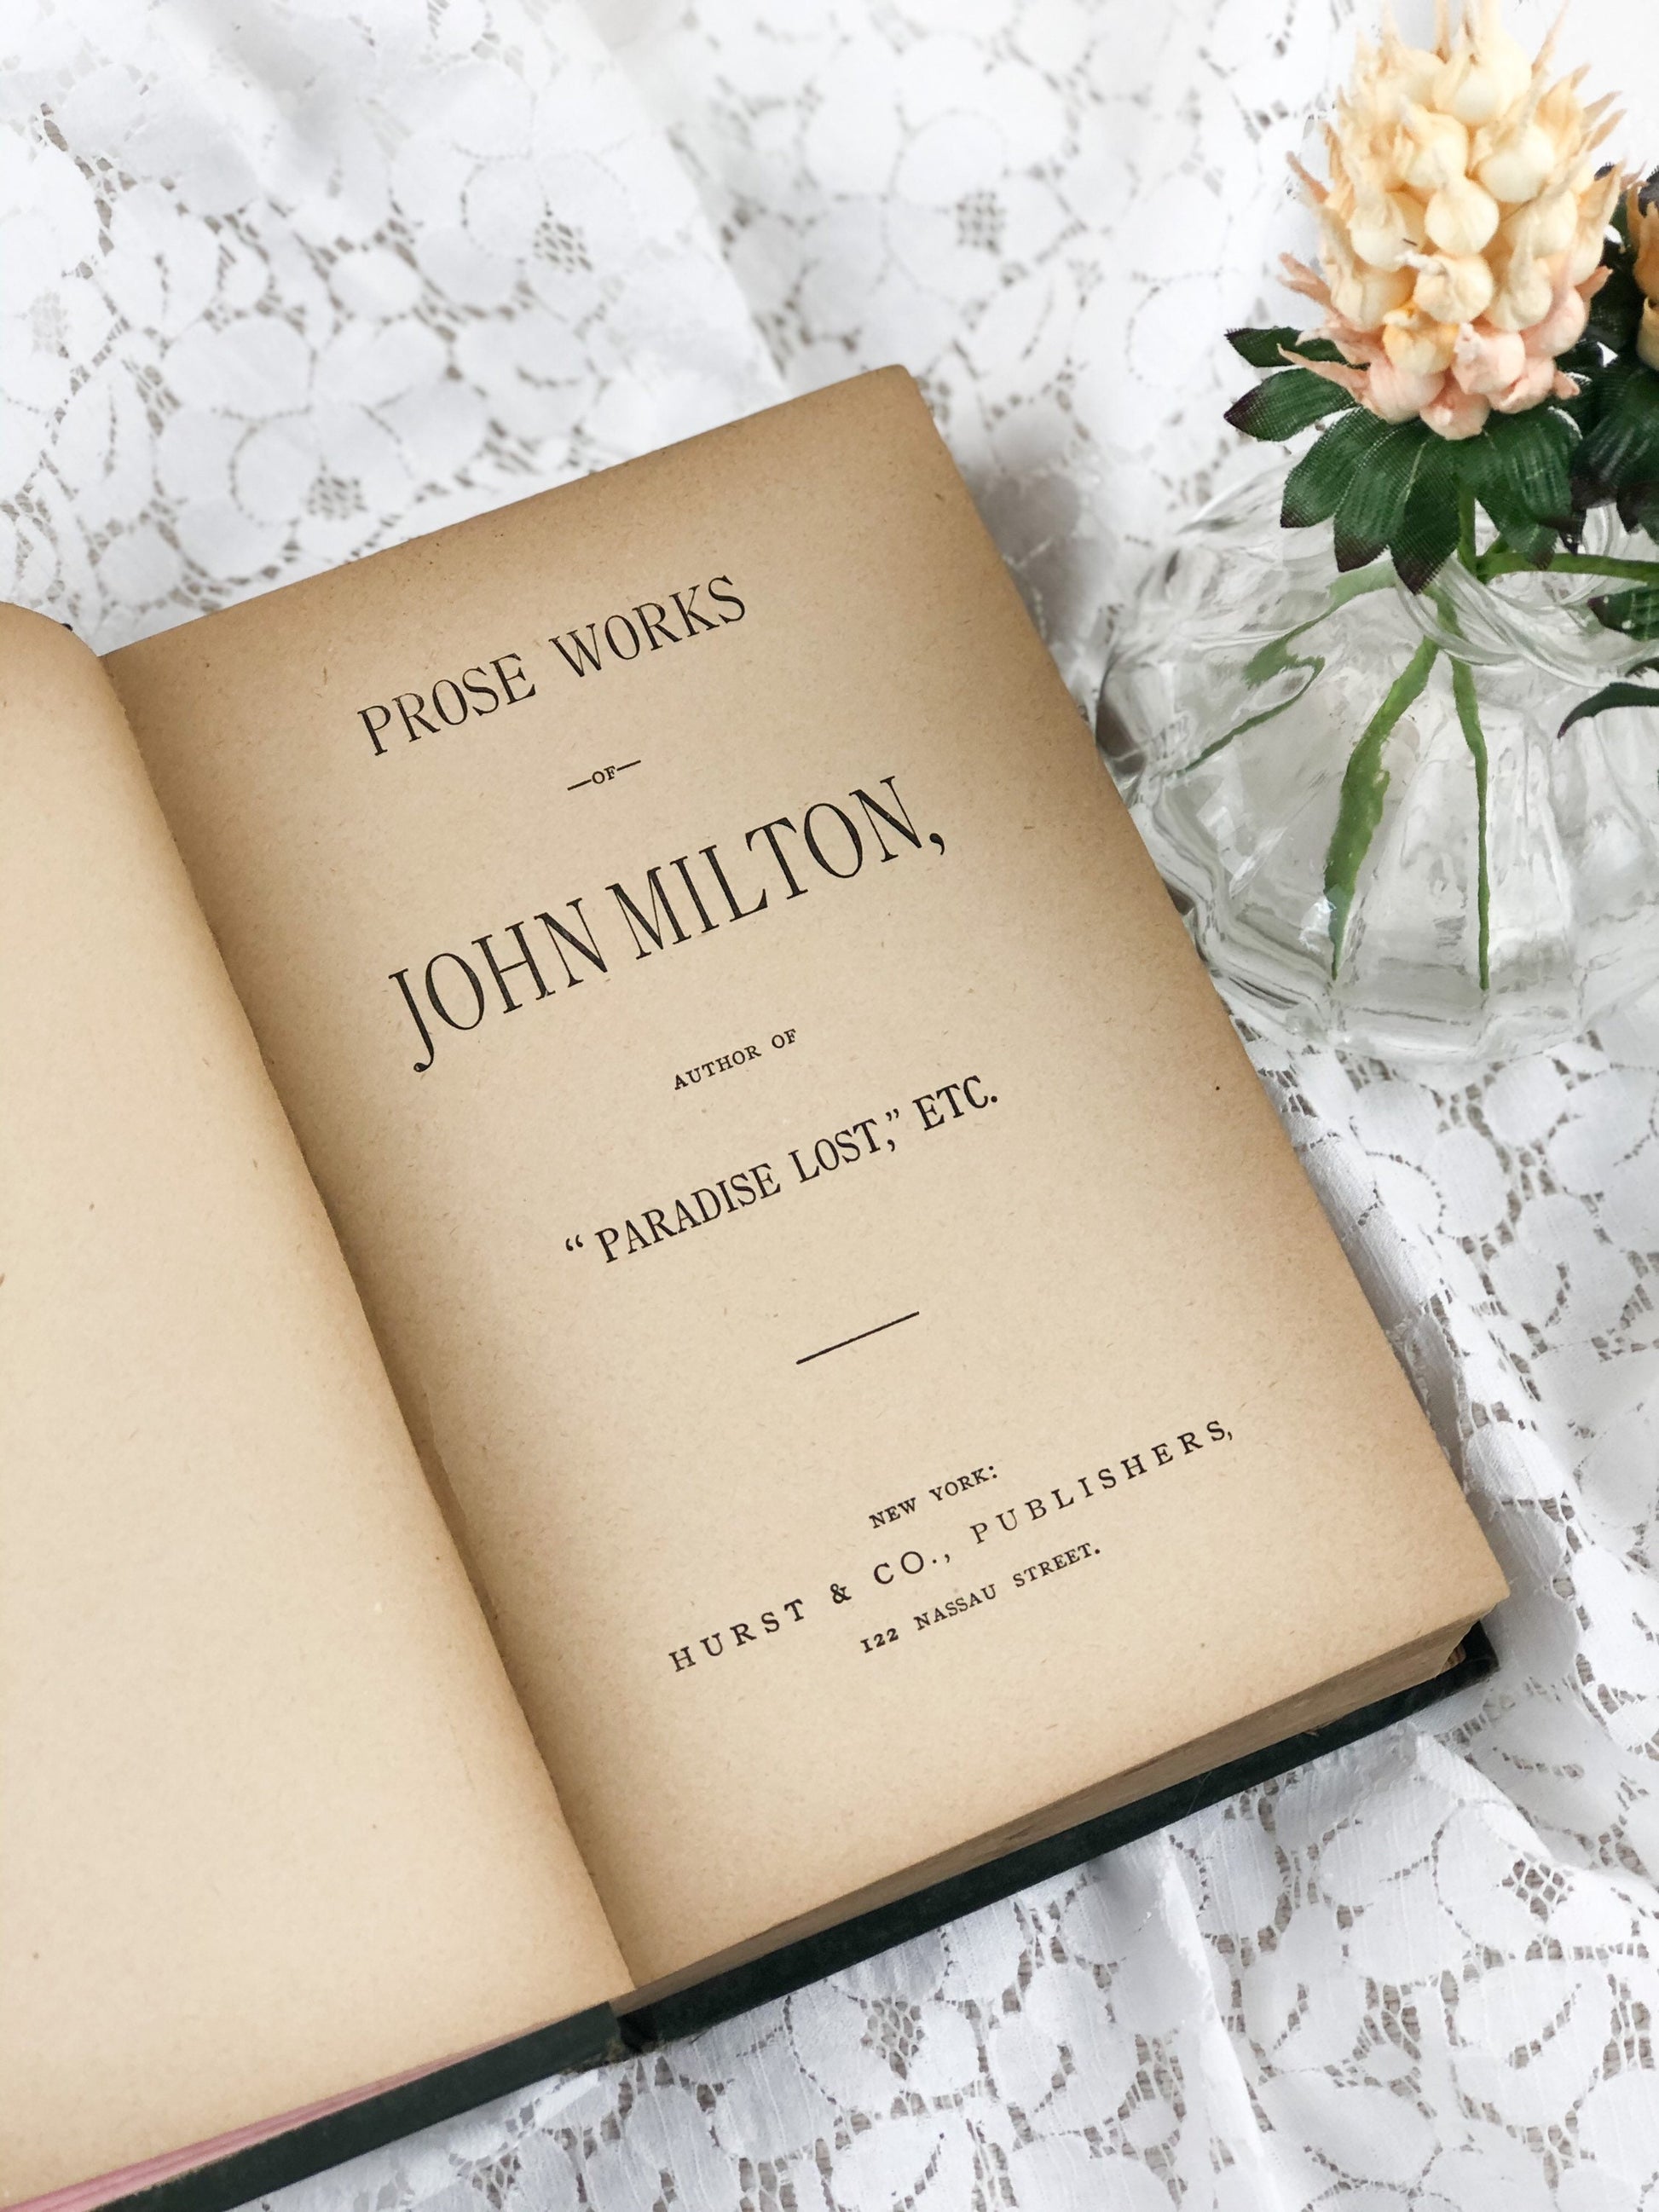 Prose Works for John Milton